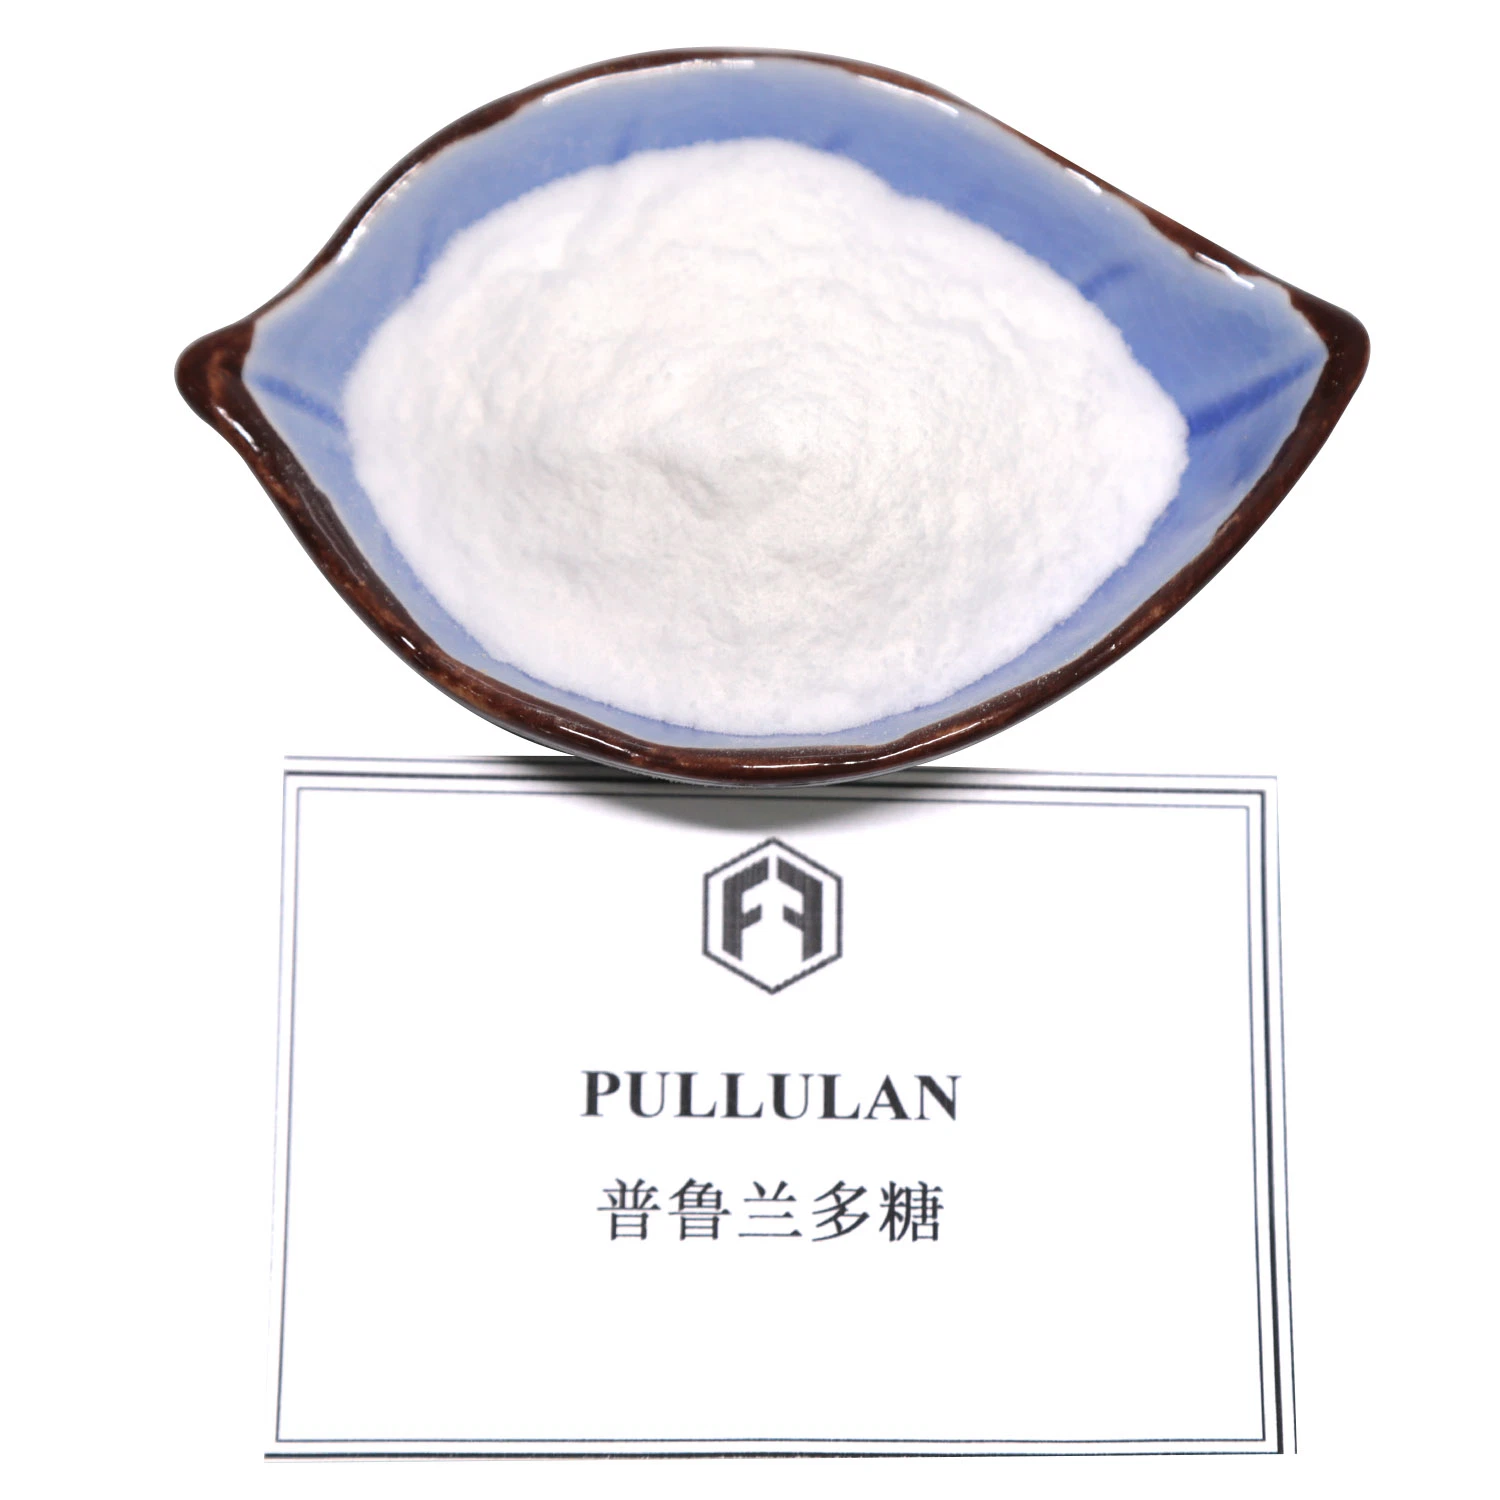 Pullulan es ampliamente utilizado en alimentos, la industria ligera, la industria química y petróleo y otros campos.